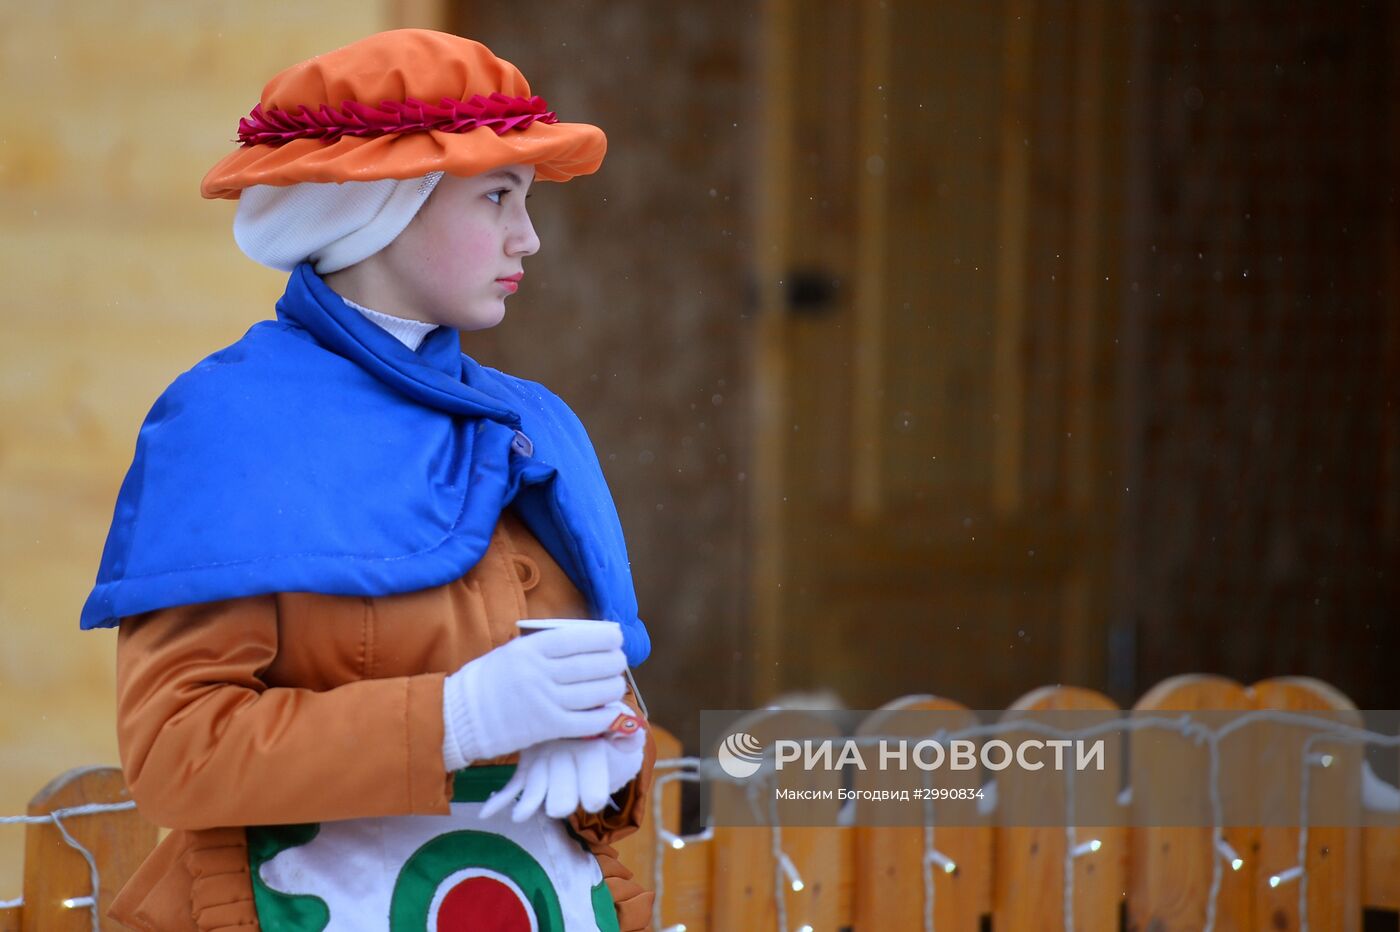 Дед Мороз из Великого Устюга посетил Казань